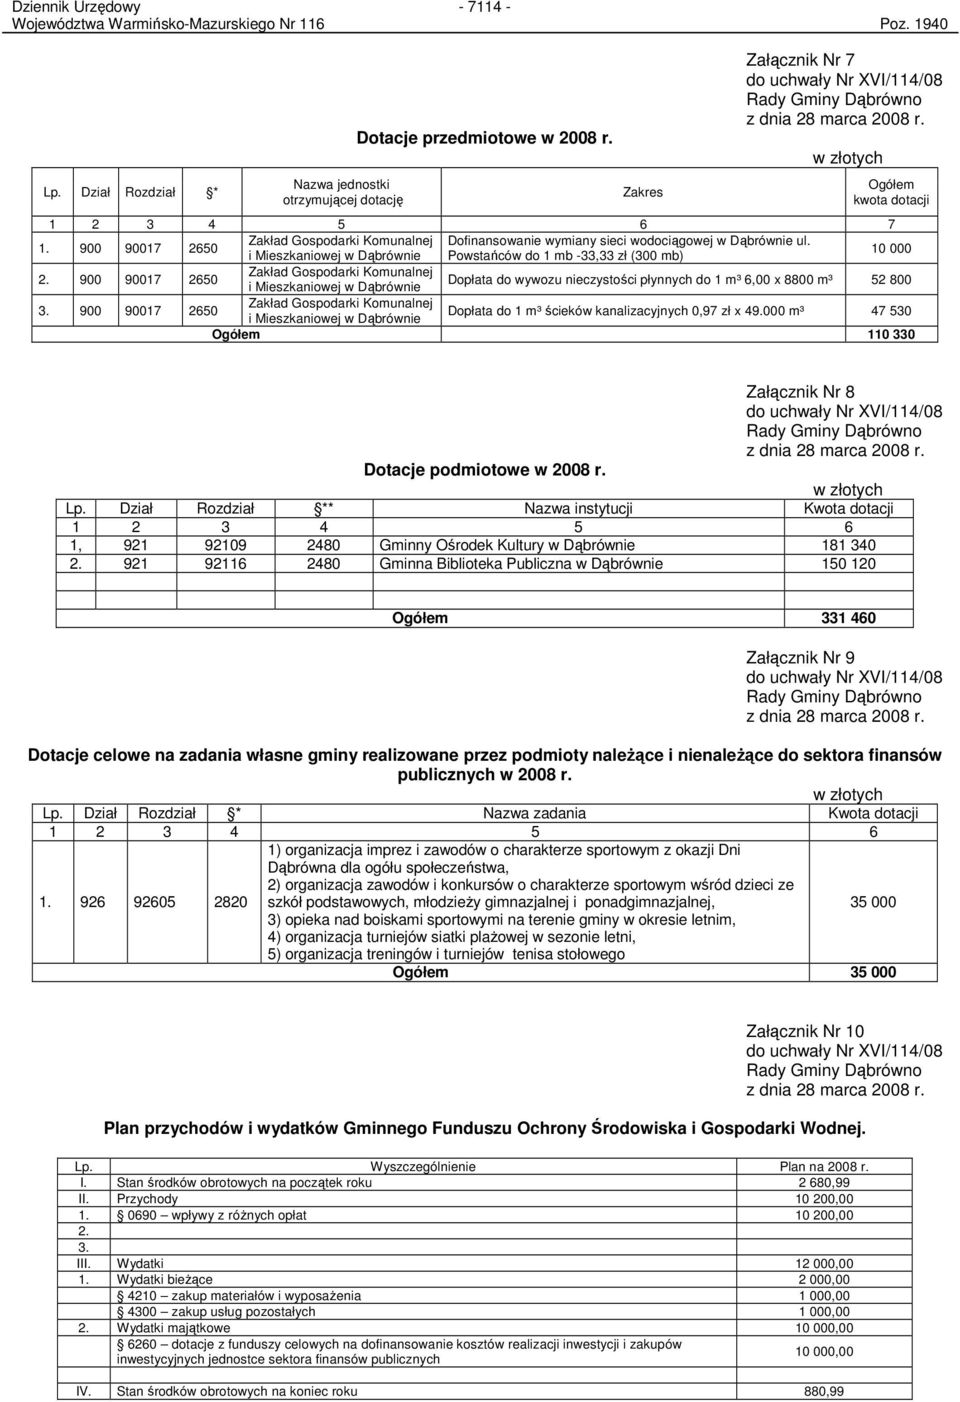 900 90017 2650 Zakład Gospodarki Komunalnej Dofinansowanie wymiany sieci wodociągowej w Dąbrównie ul. i Mieszkaniowej w Dąbrównie Powstańców do 1 mb -33,33 zł (300 mb) 10 000 2.